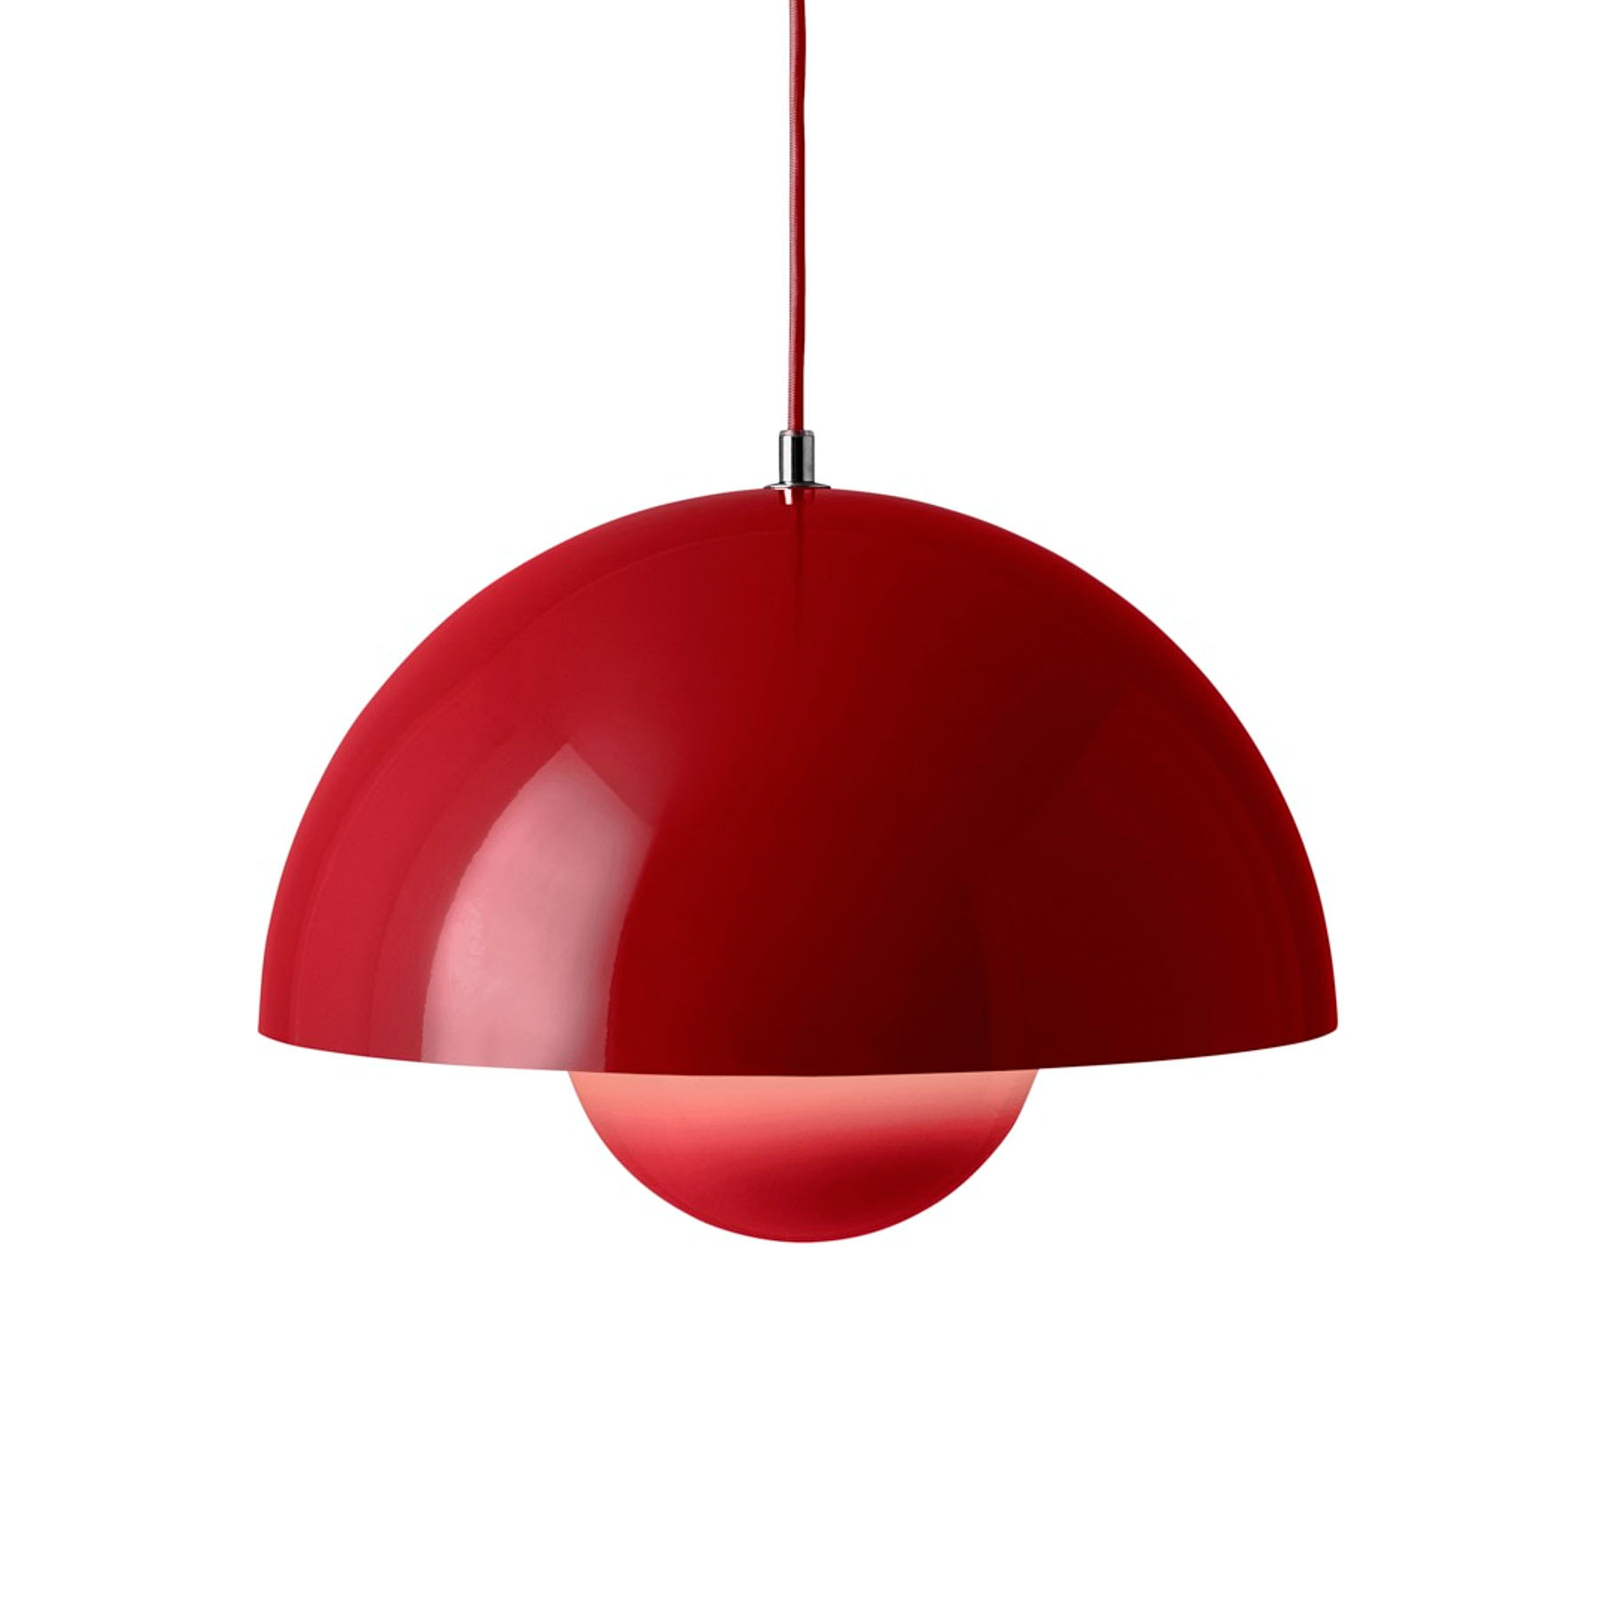 &Tradition hanglamp Bloempot VP7, Ø 37 cm, vermiljoen rood